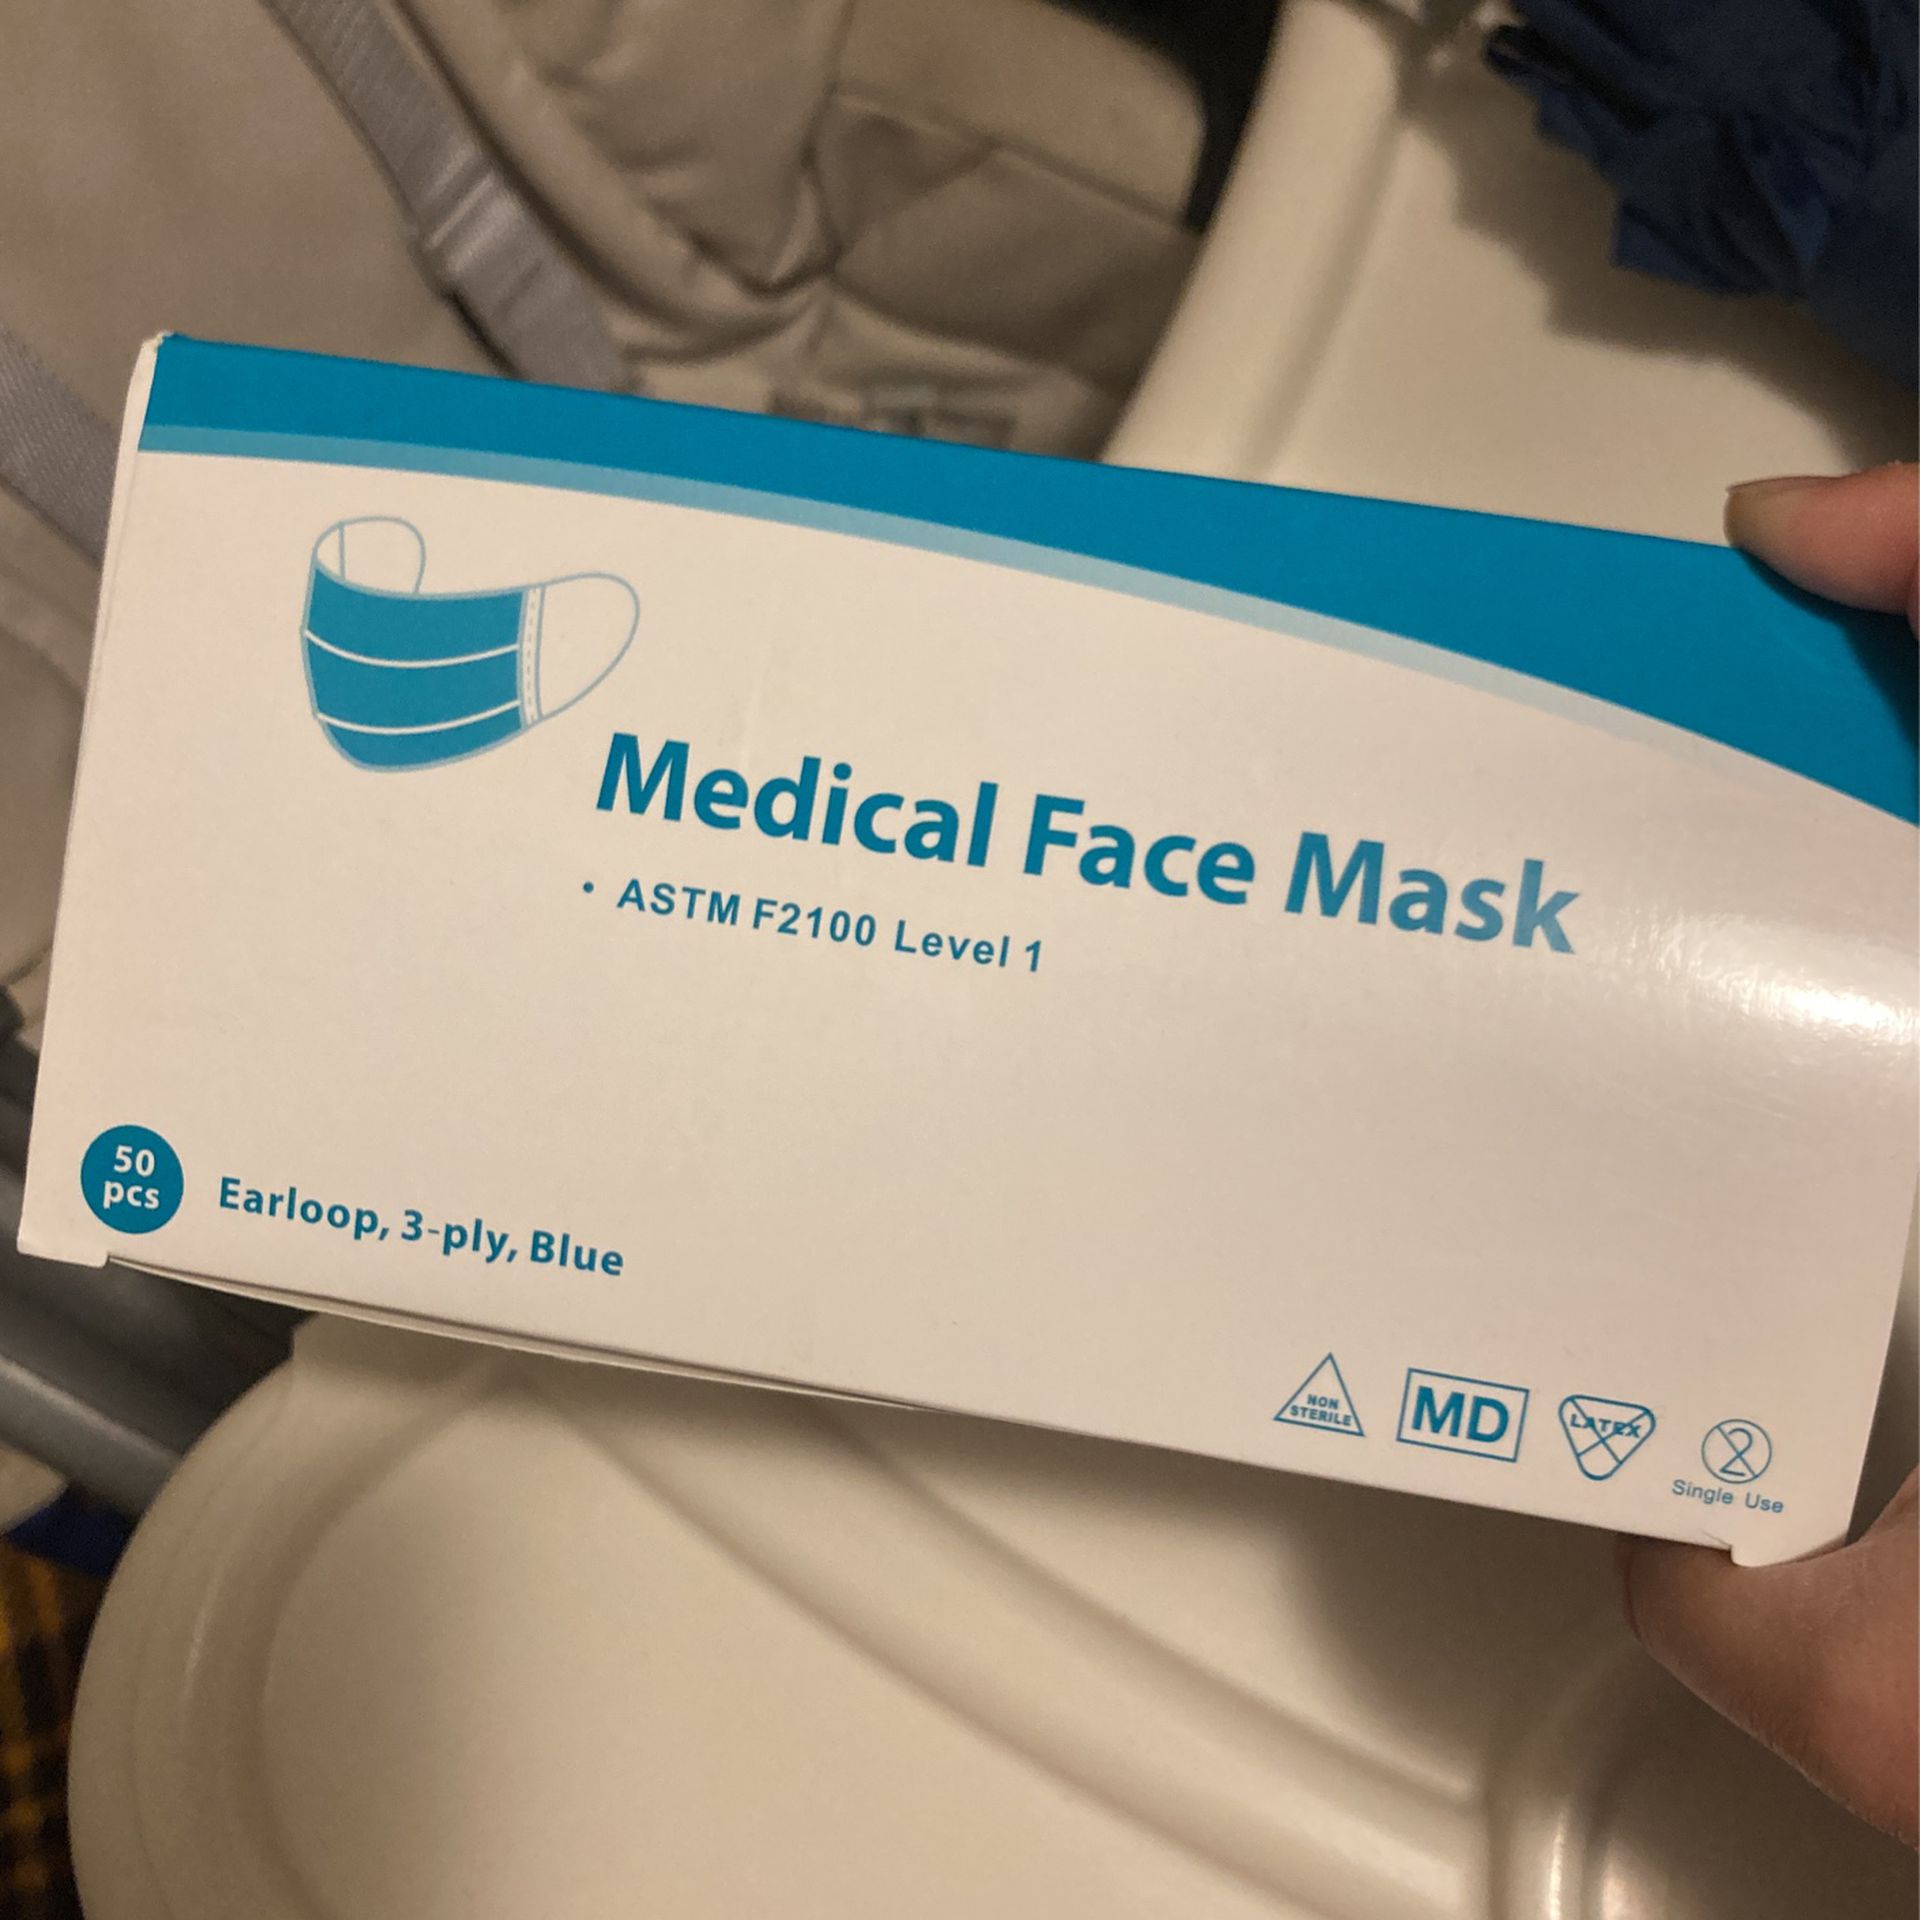 Medical Face Mask.